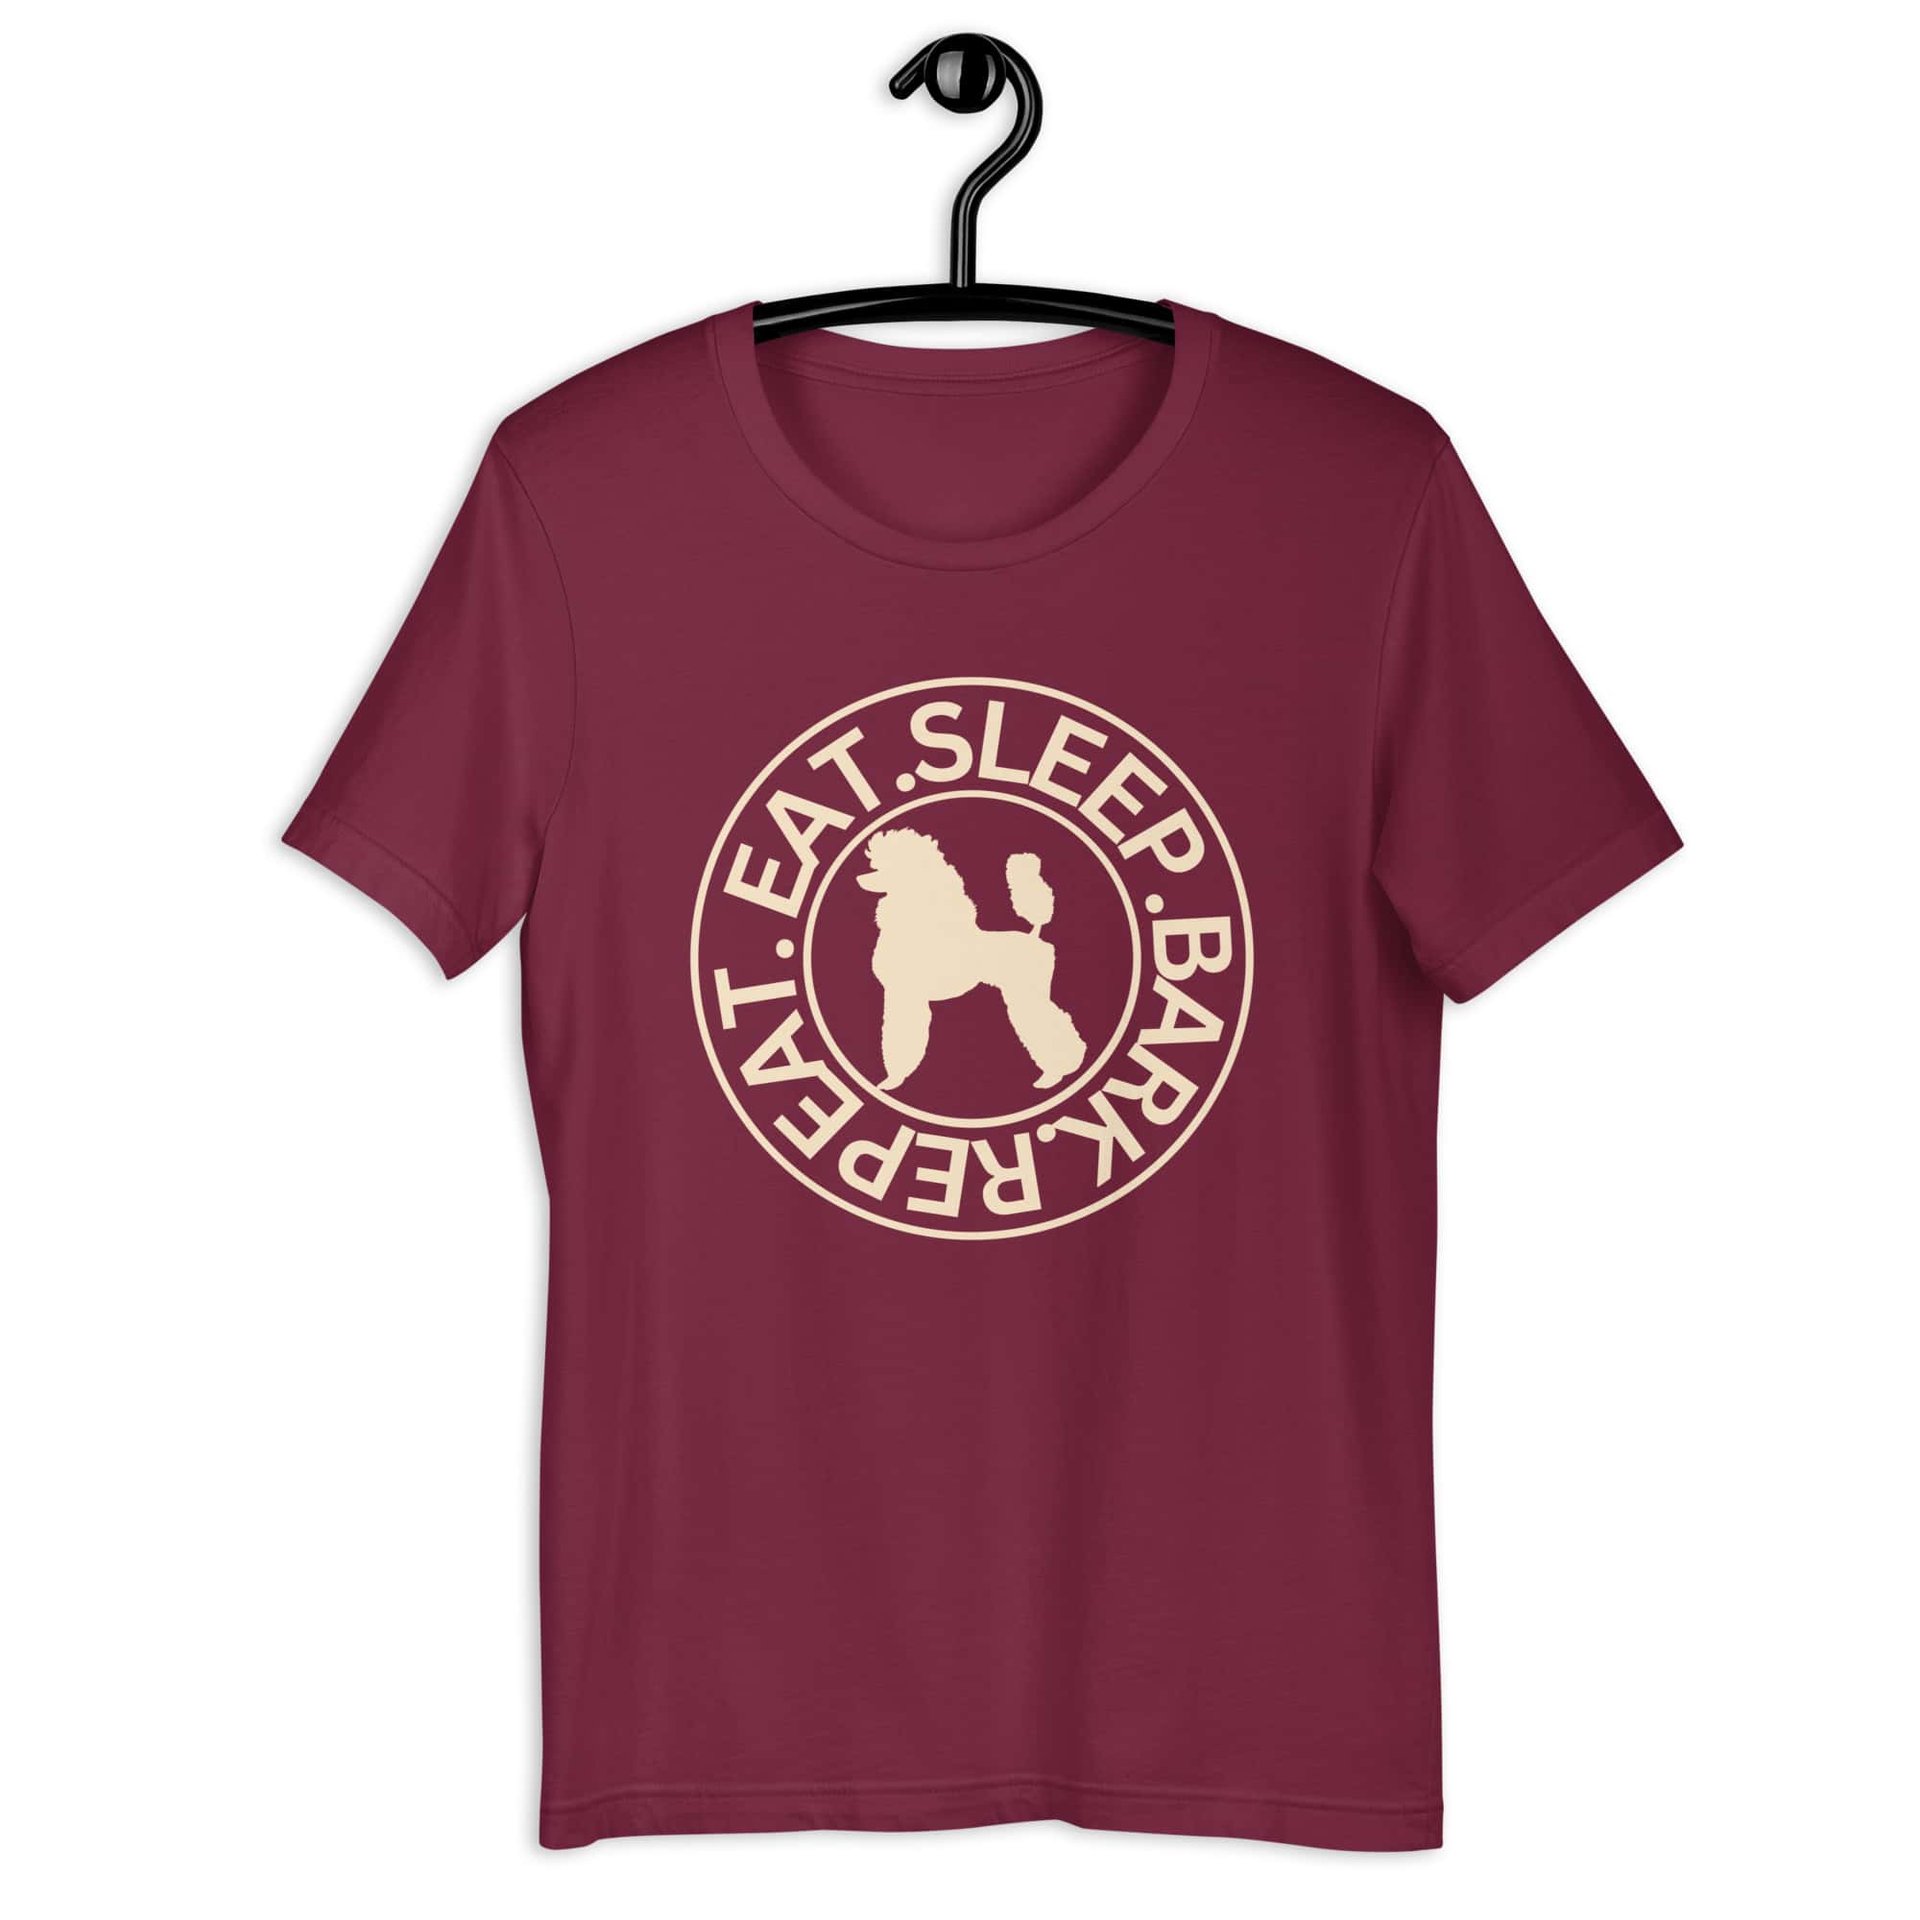 Eat Sleep Repeat Bark Miniature Poodle Unisex T-Shirt. Maroon